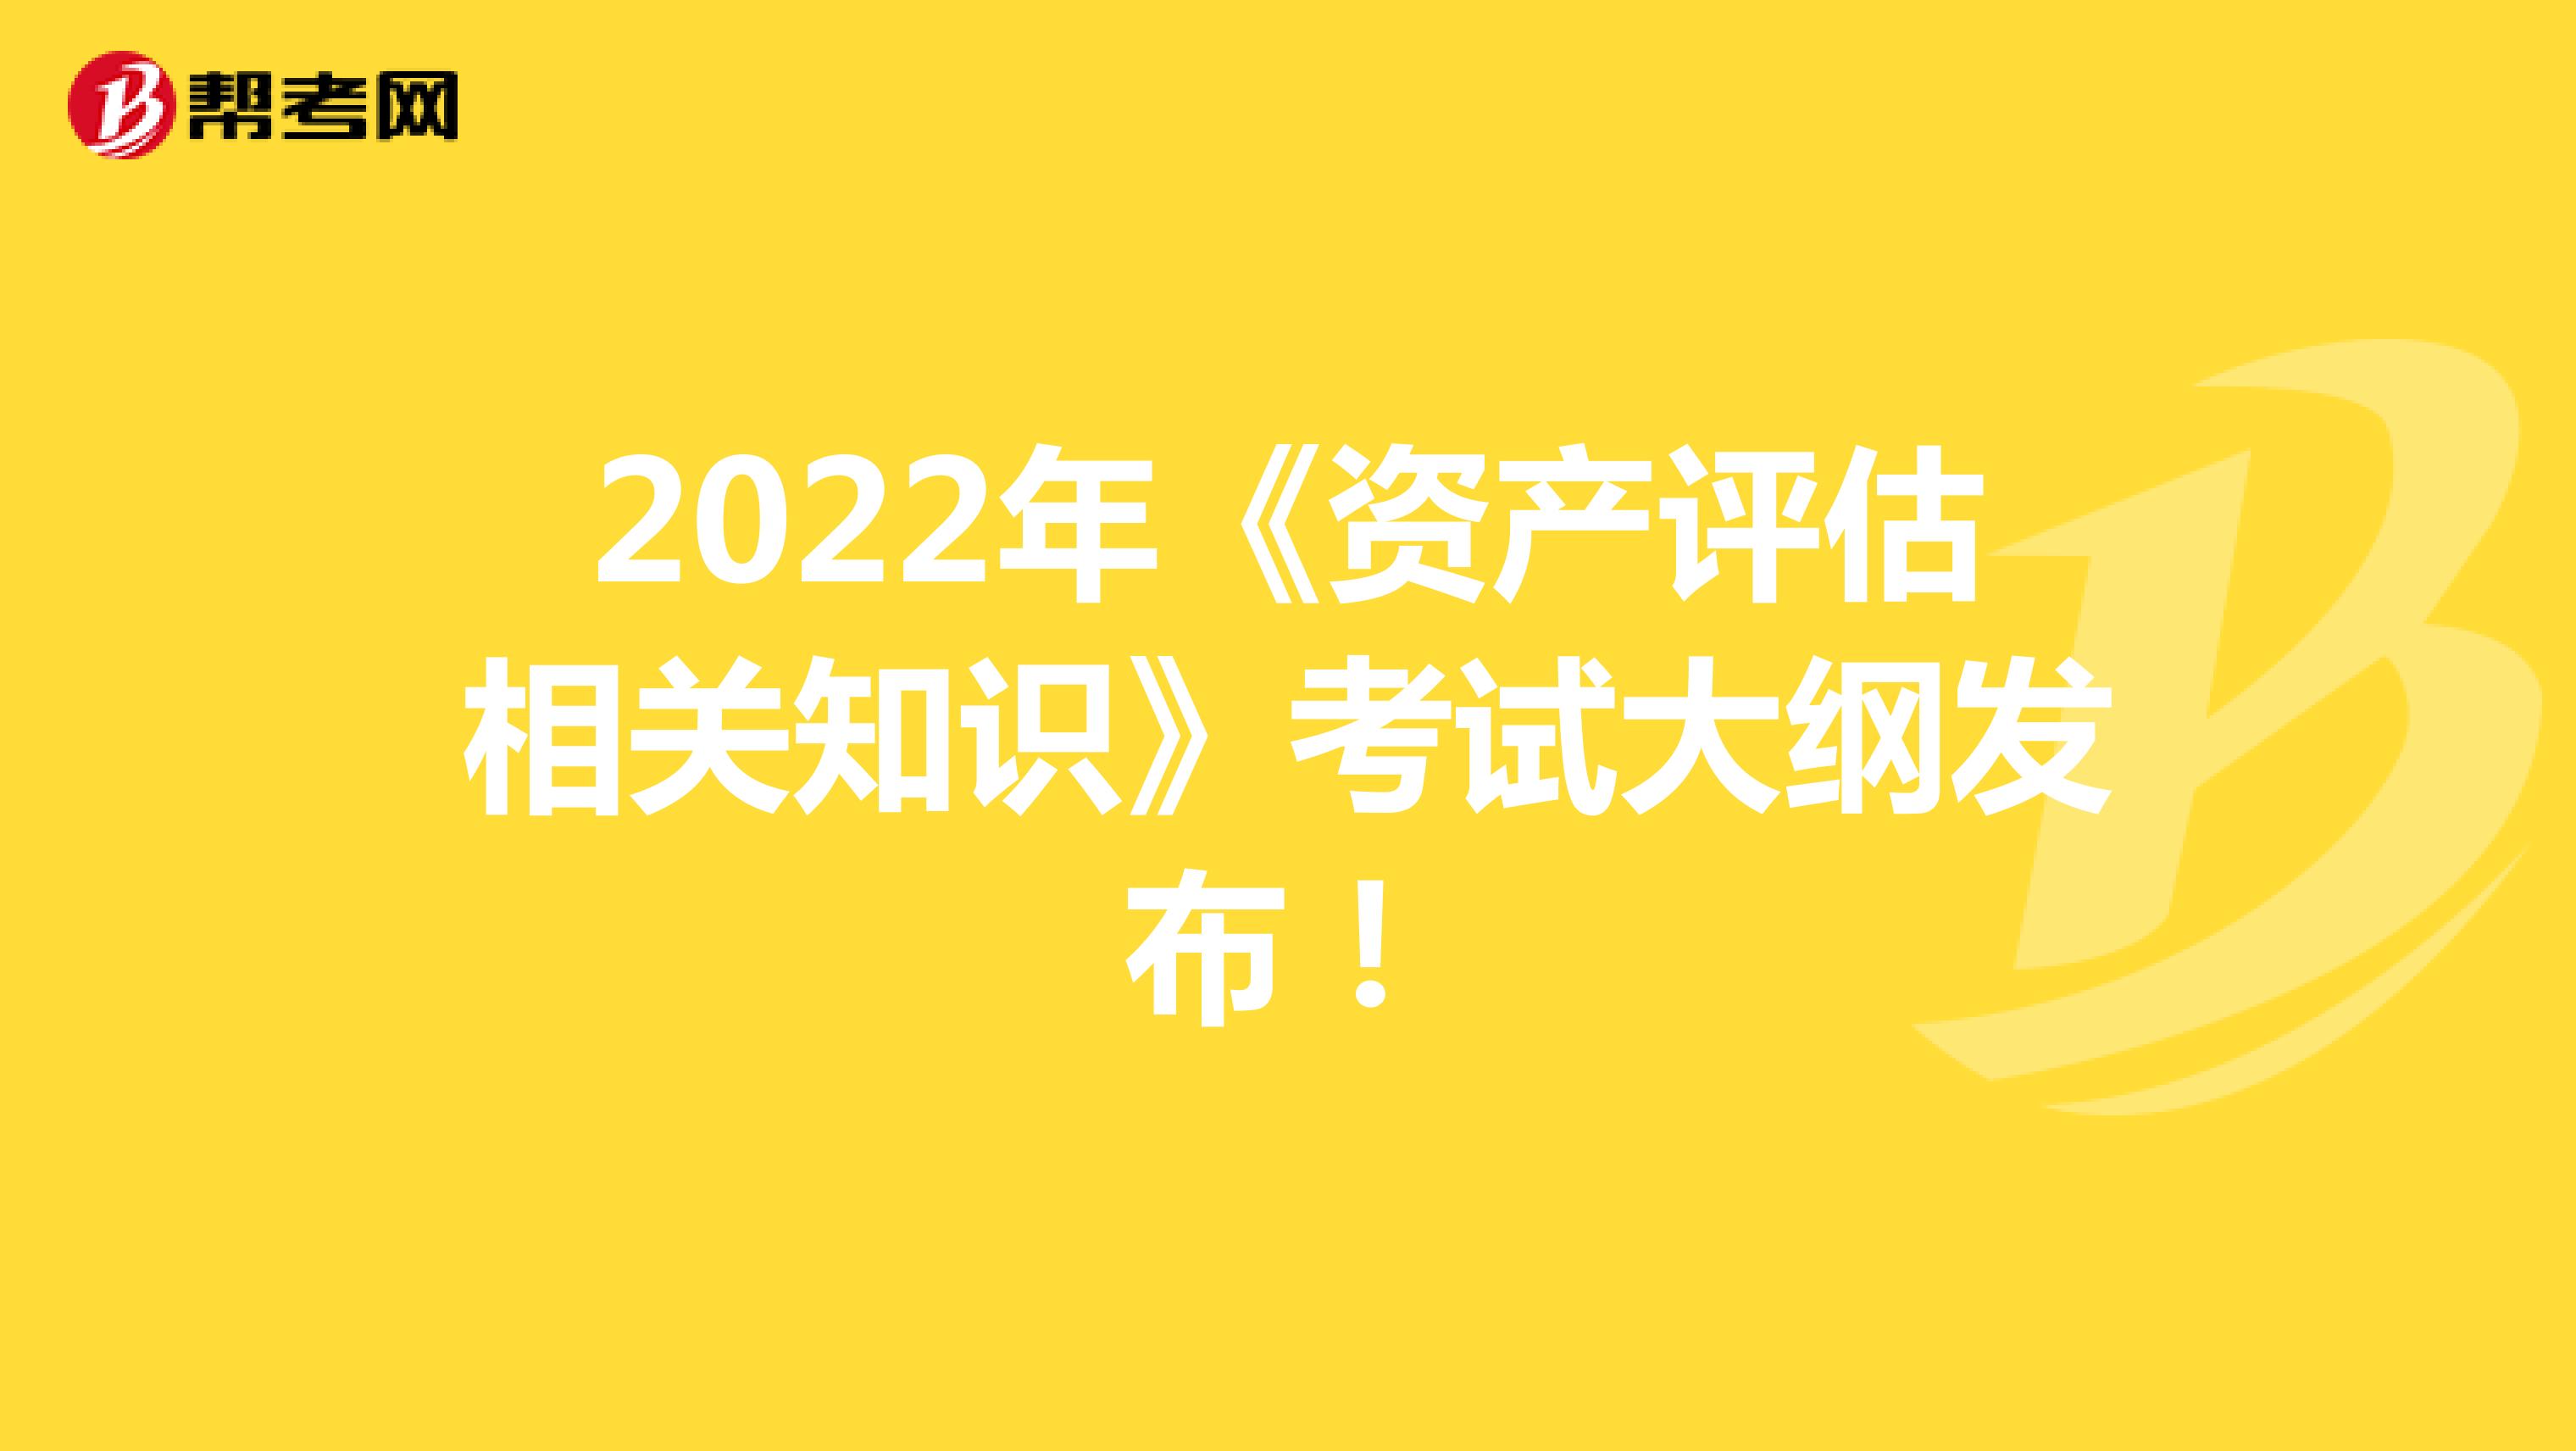 2022年《资产评估相关知识》考试大纲发布！